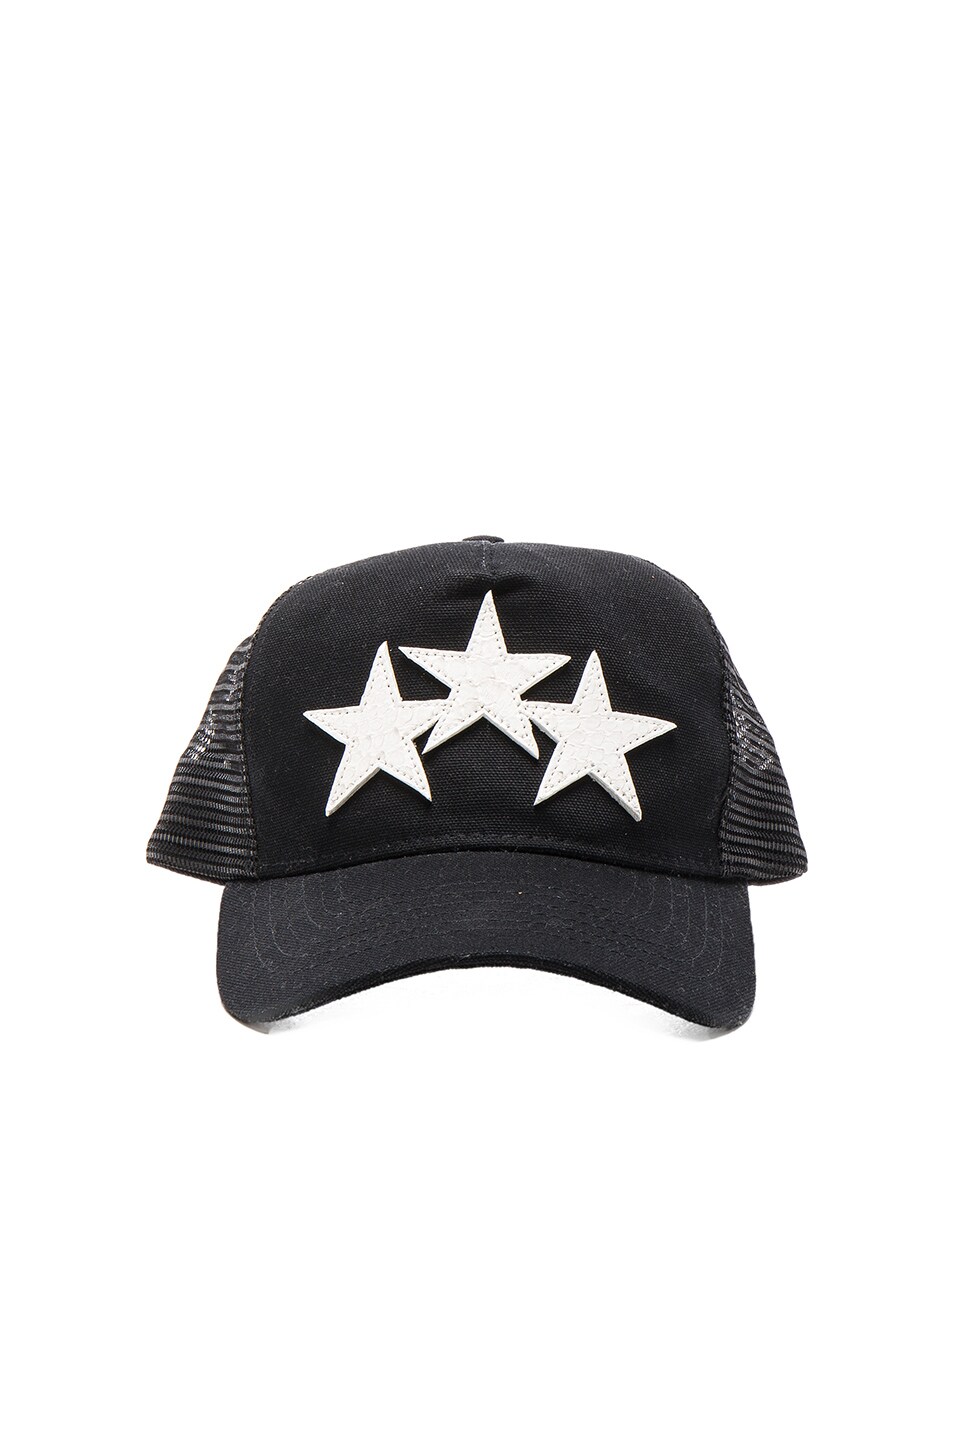 Image 1 of Amiri Star Trucker Hat in Black & White Snake